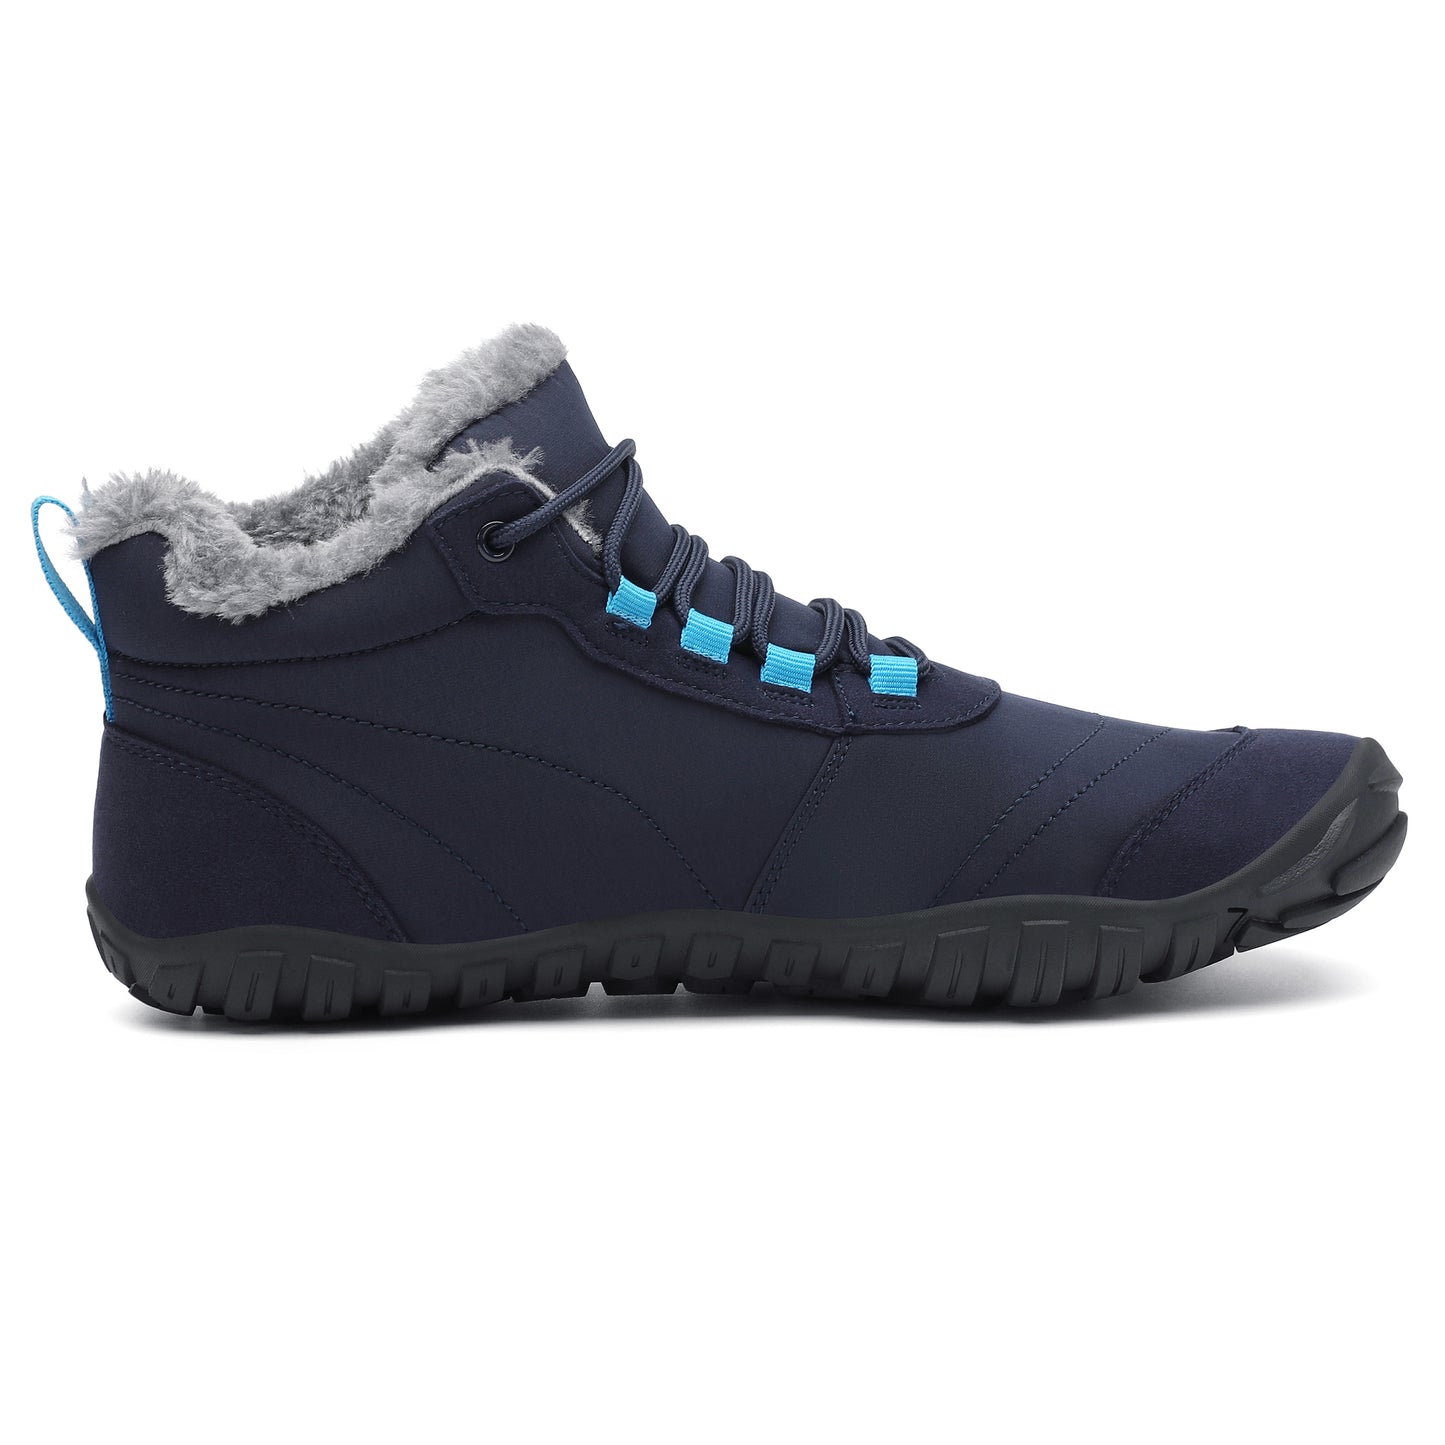 Botas Will II - Azul - Barefootshoes